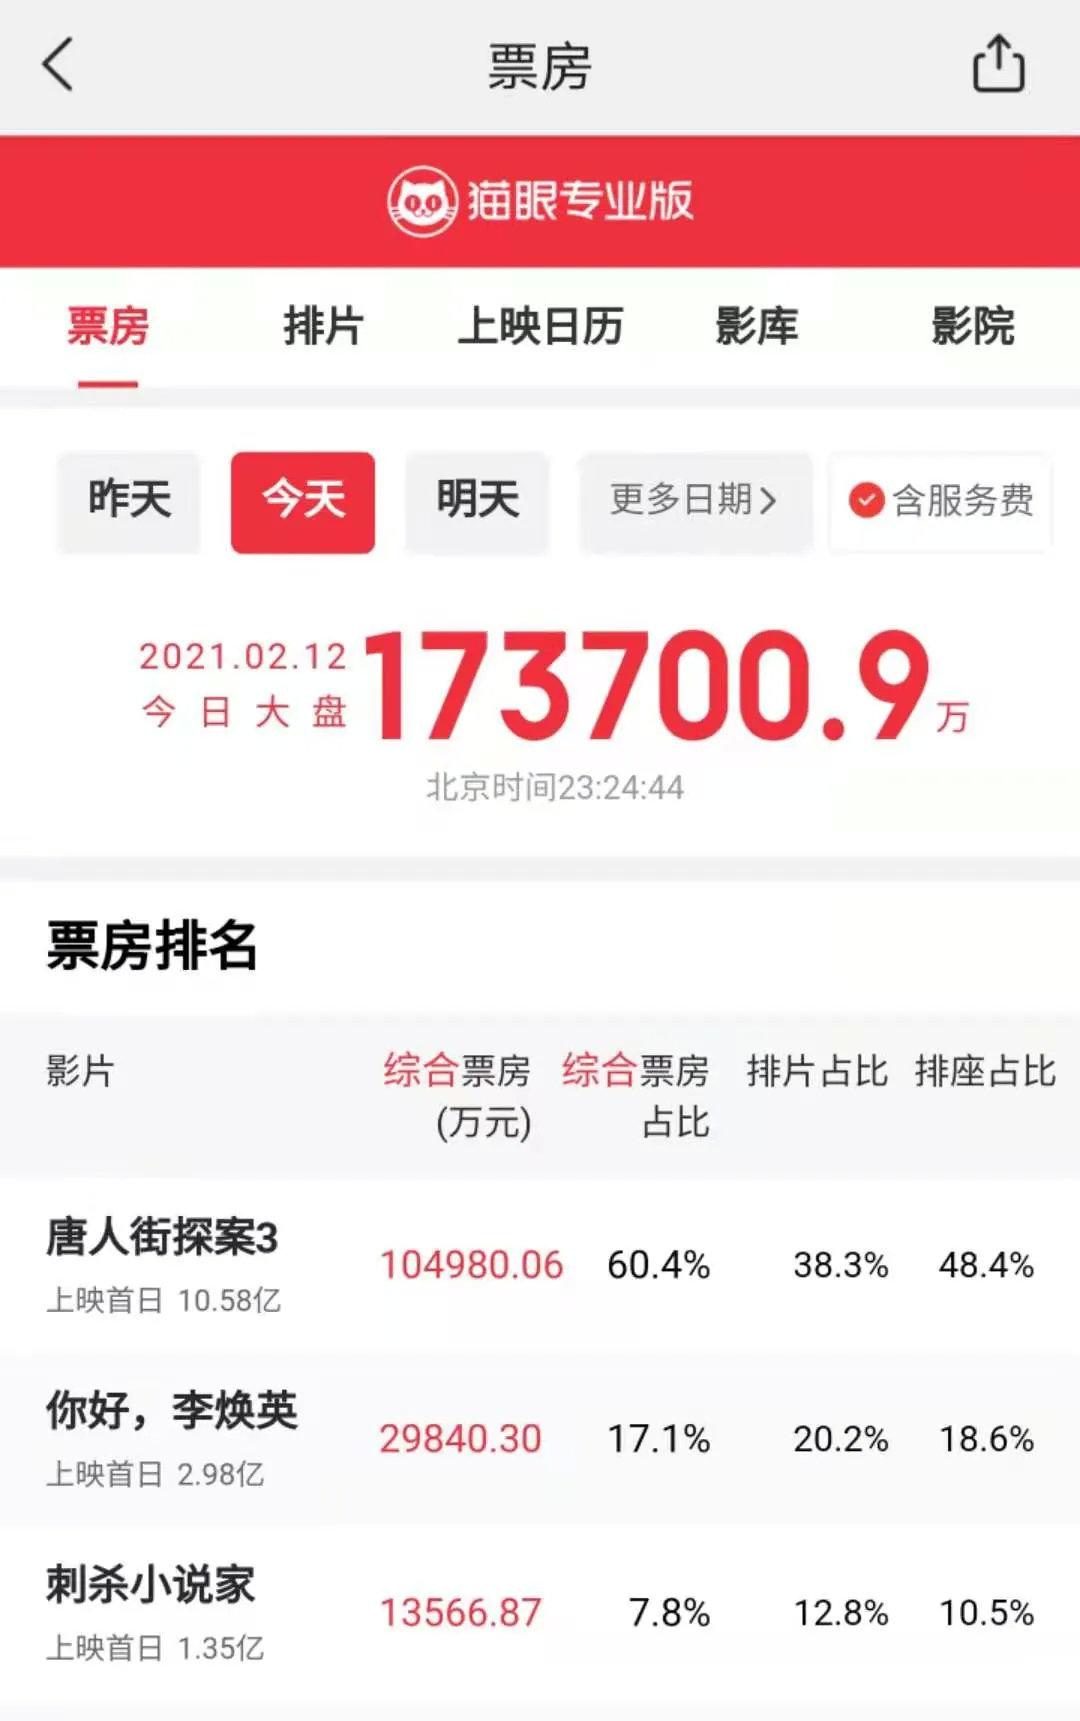 17.37亿！ 创造全球纪录王宝强和刘浩然“完全受欢迎”！  _东方财富网